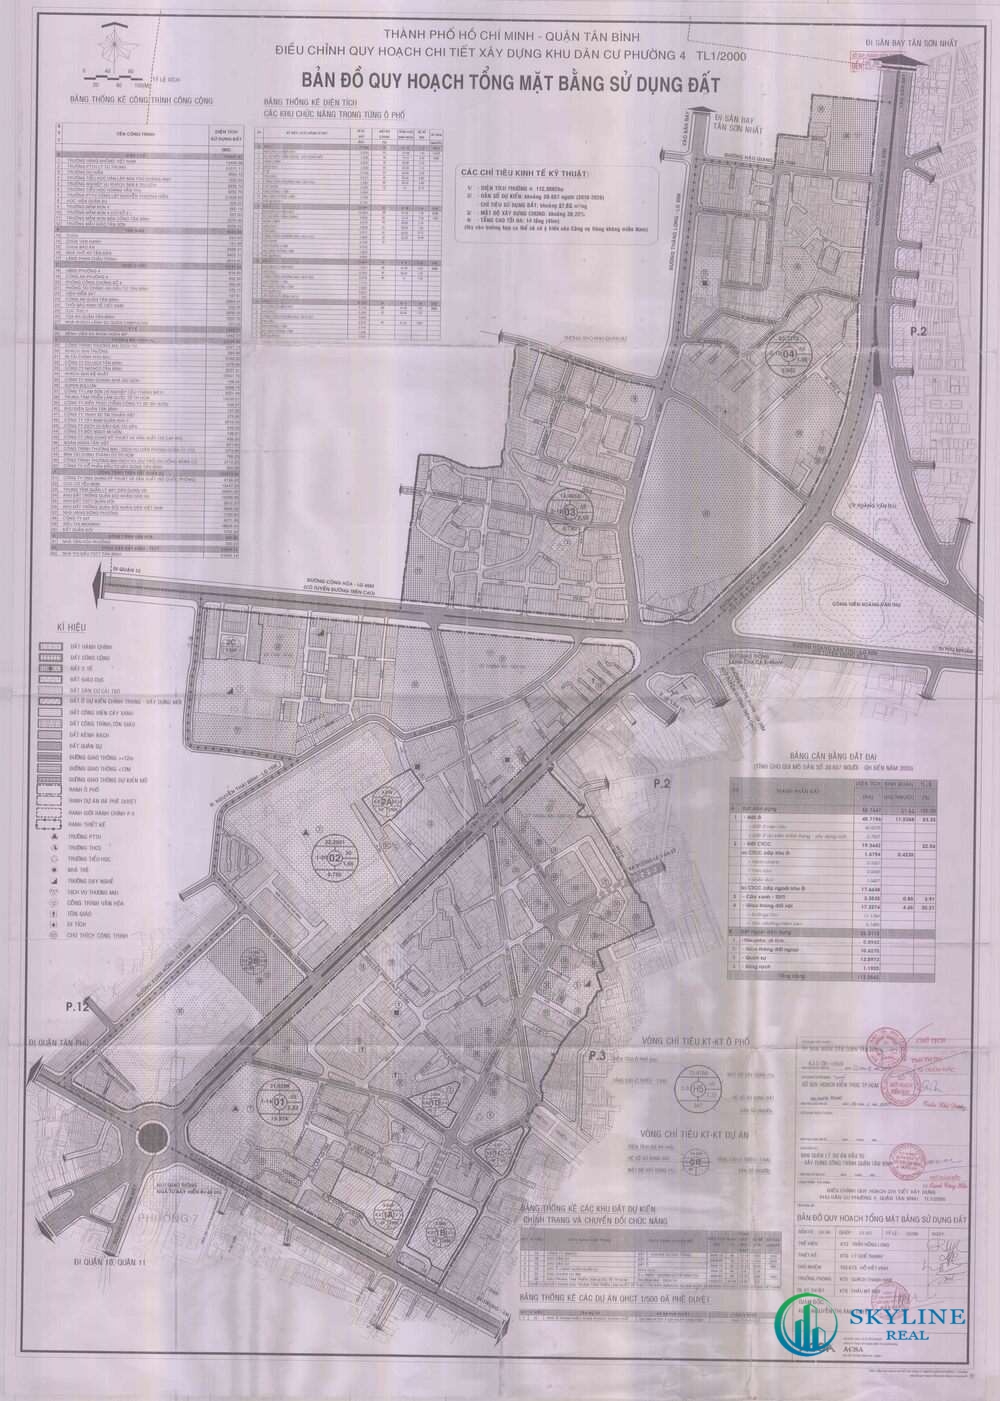 Bản đồ quy hoạch 1/2000 Phường 4 quận Tân Bình 